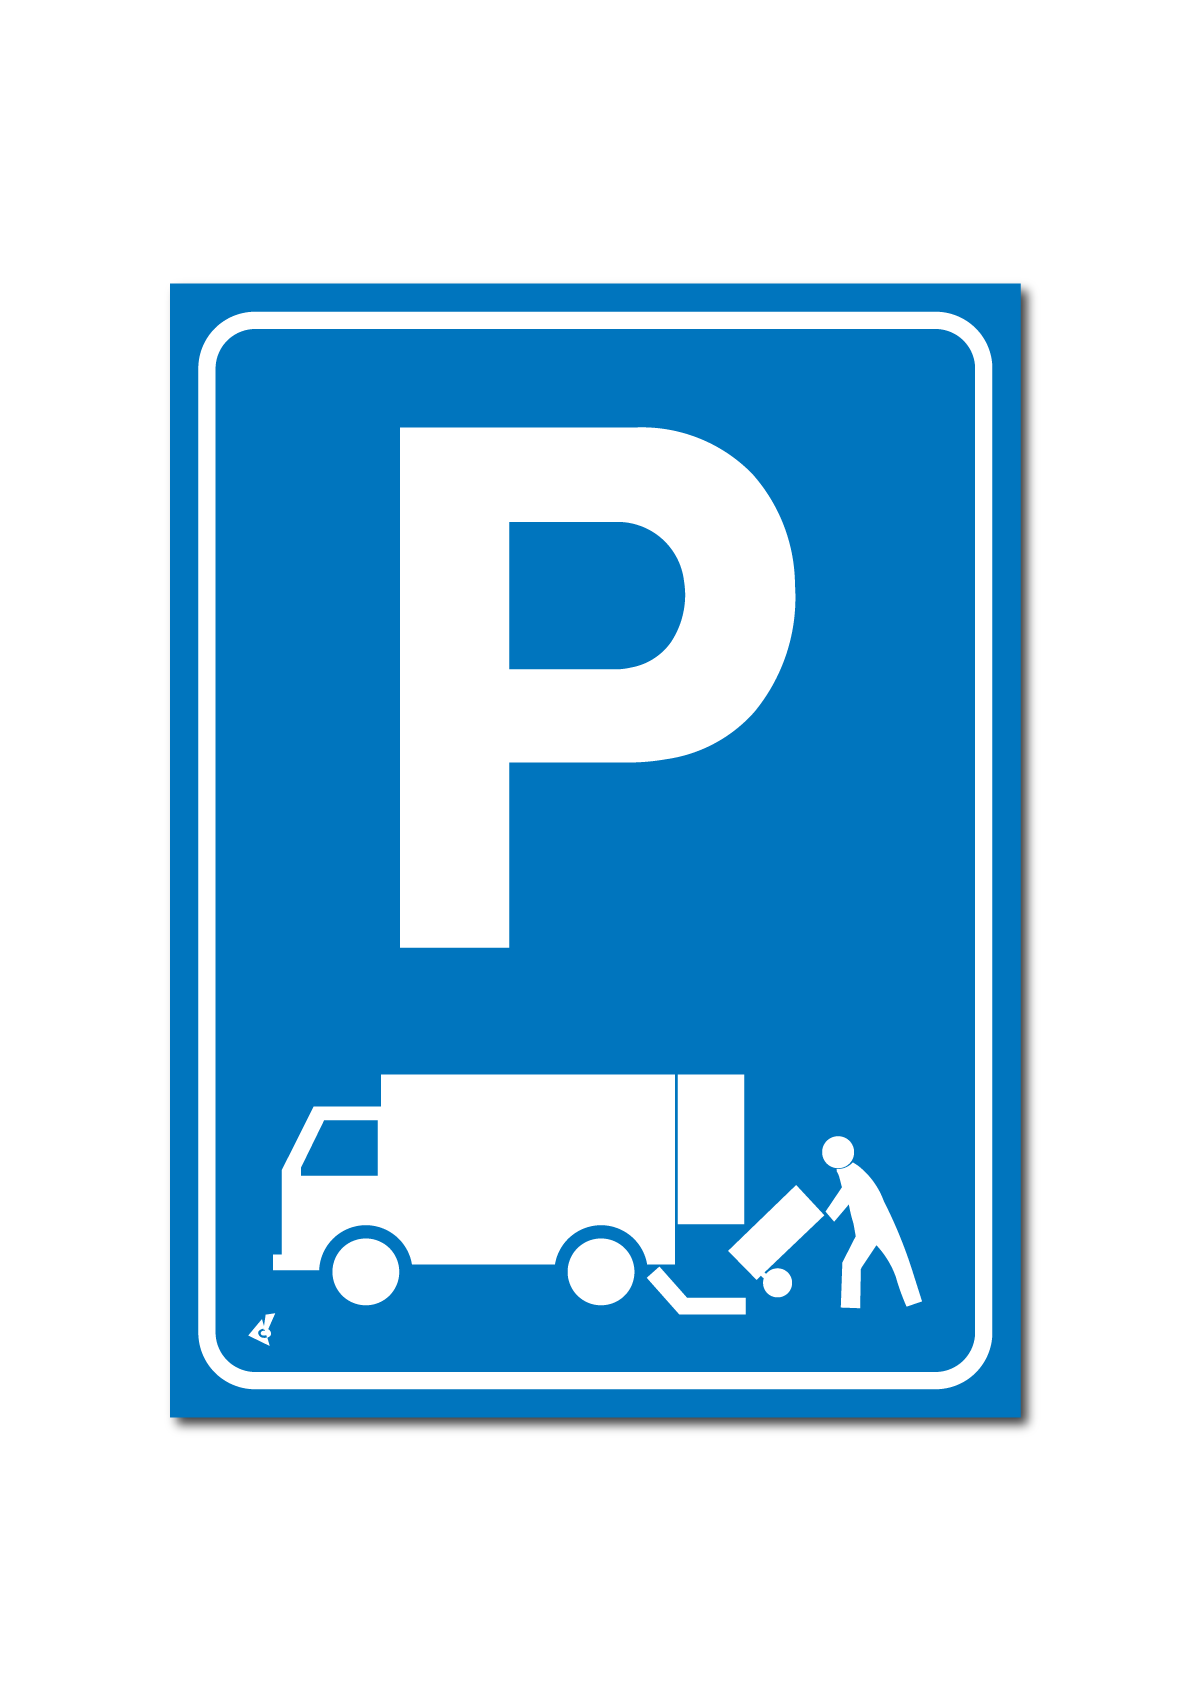 Parken zum direkten Be- und Entladen von Waren